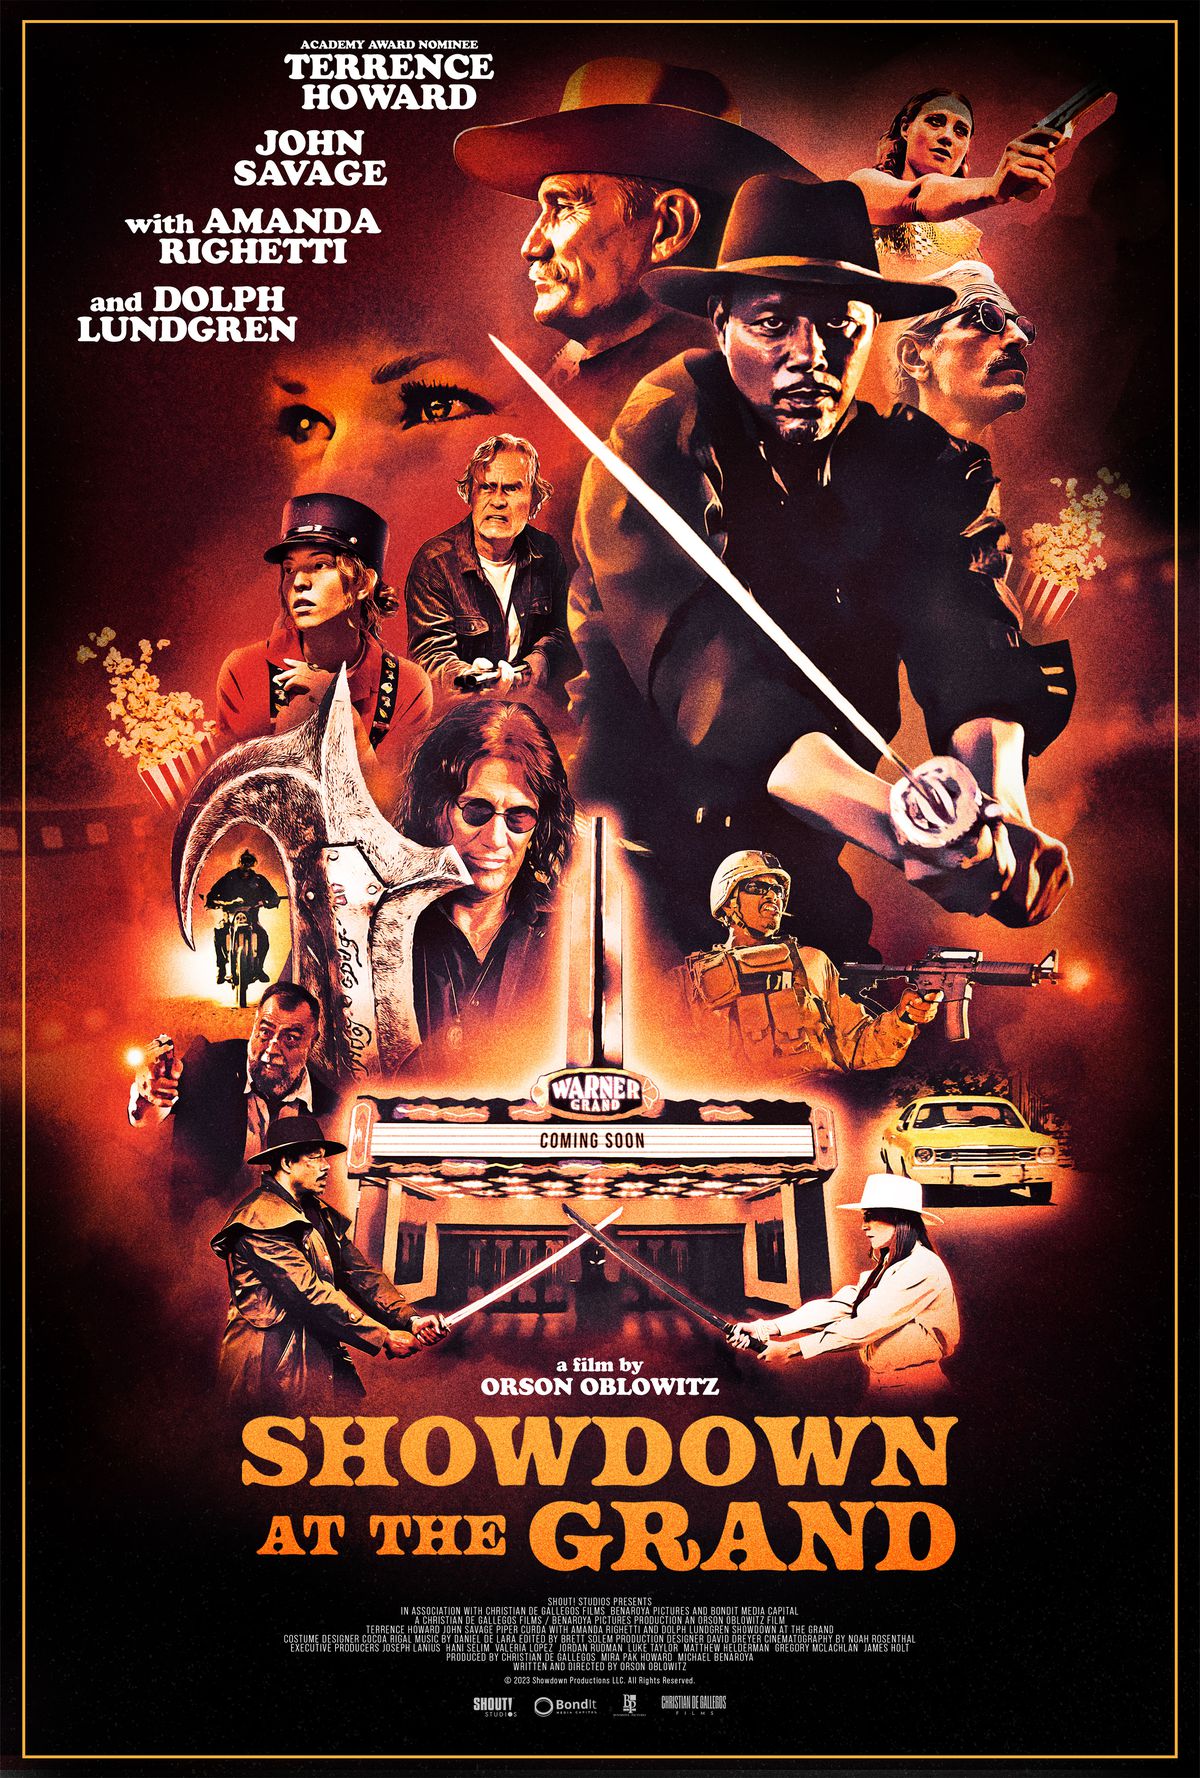 Affisch för Showdown at the Grand, en filmaffisch i gammaldags stil.  Det finns ett filmtält längst fram, två personer som slåss med svärd framför den, och många ansikten som är engagerade i olika former av action.